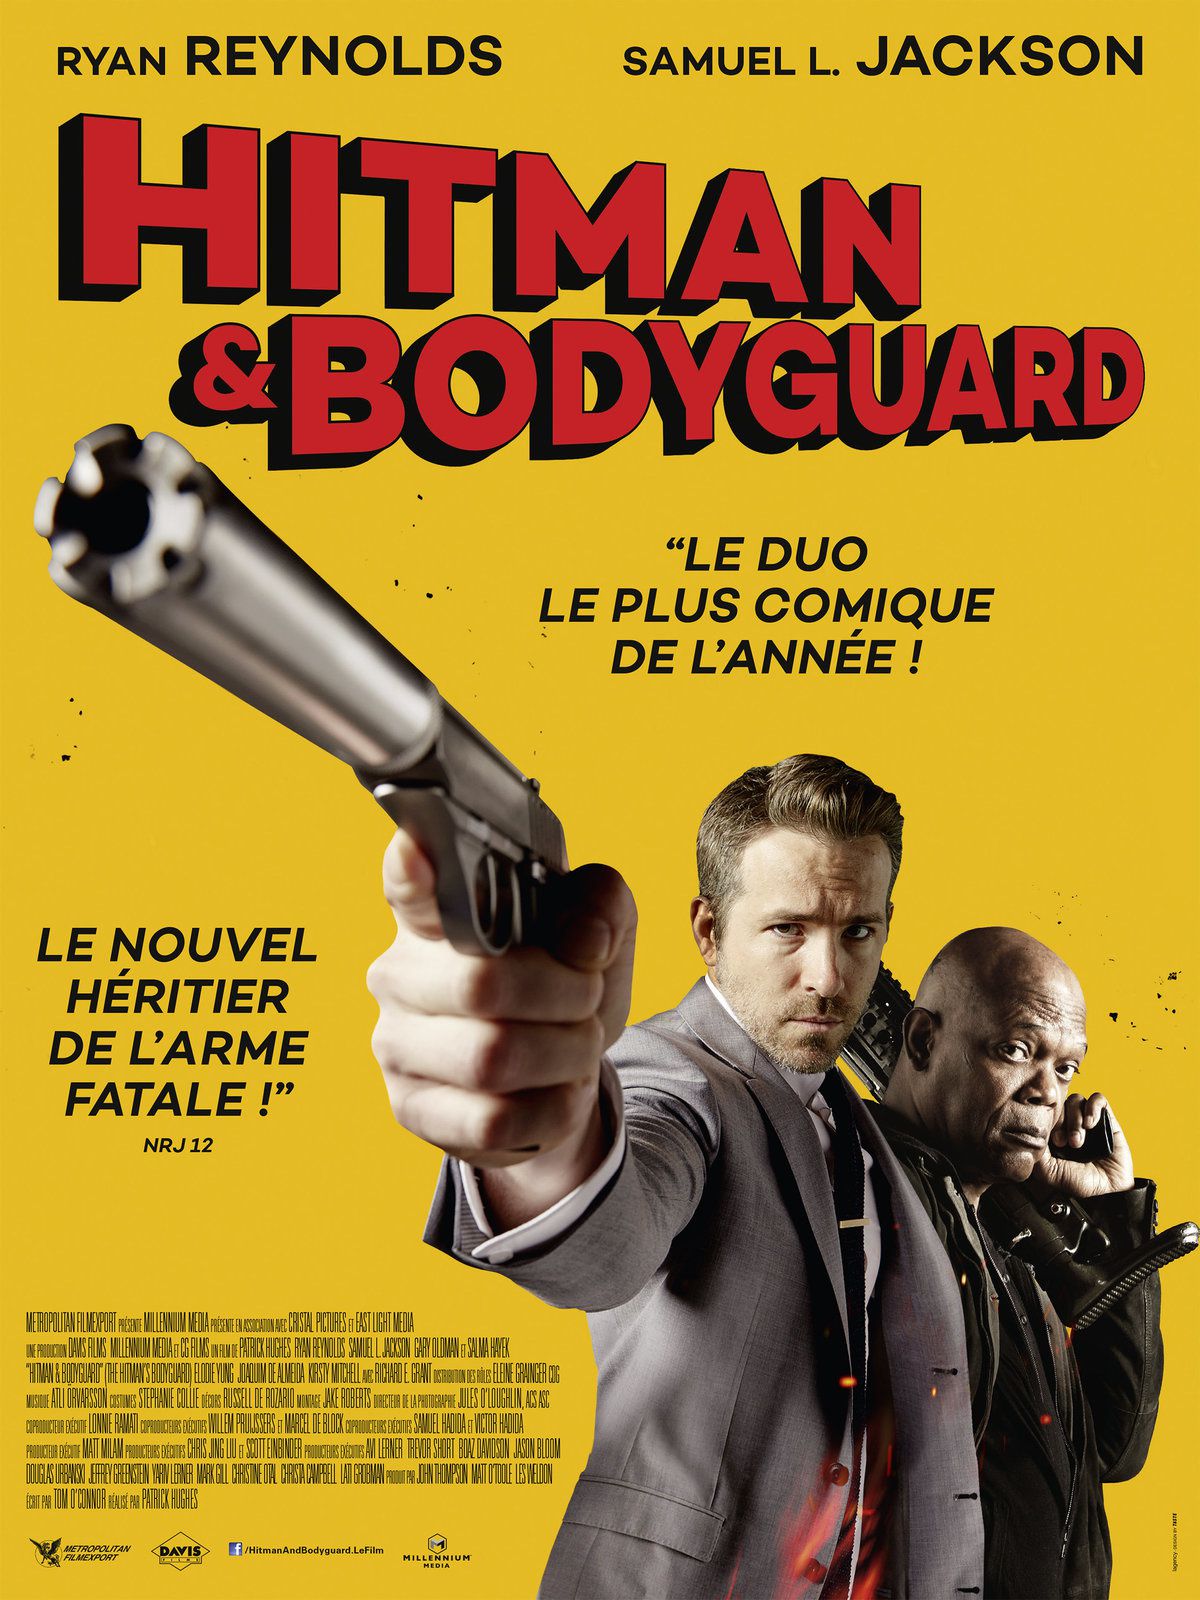 HITMAN AND BODYGUARD avec Ryan Reynolds et Samuel L. Jackson – La bande-annonce explosive ! Le 23 août 2017 au cinéma